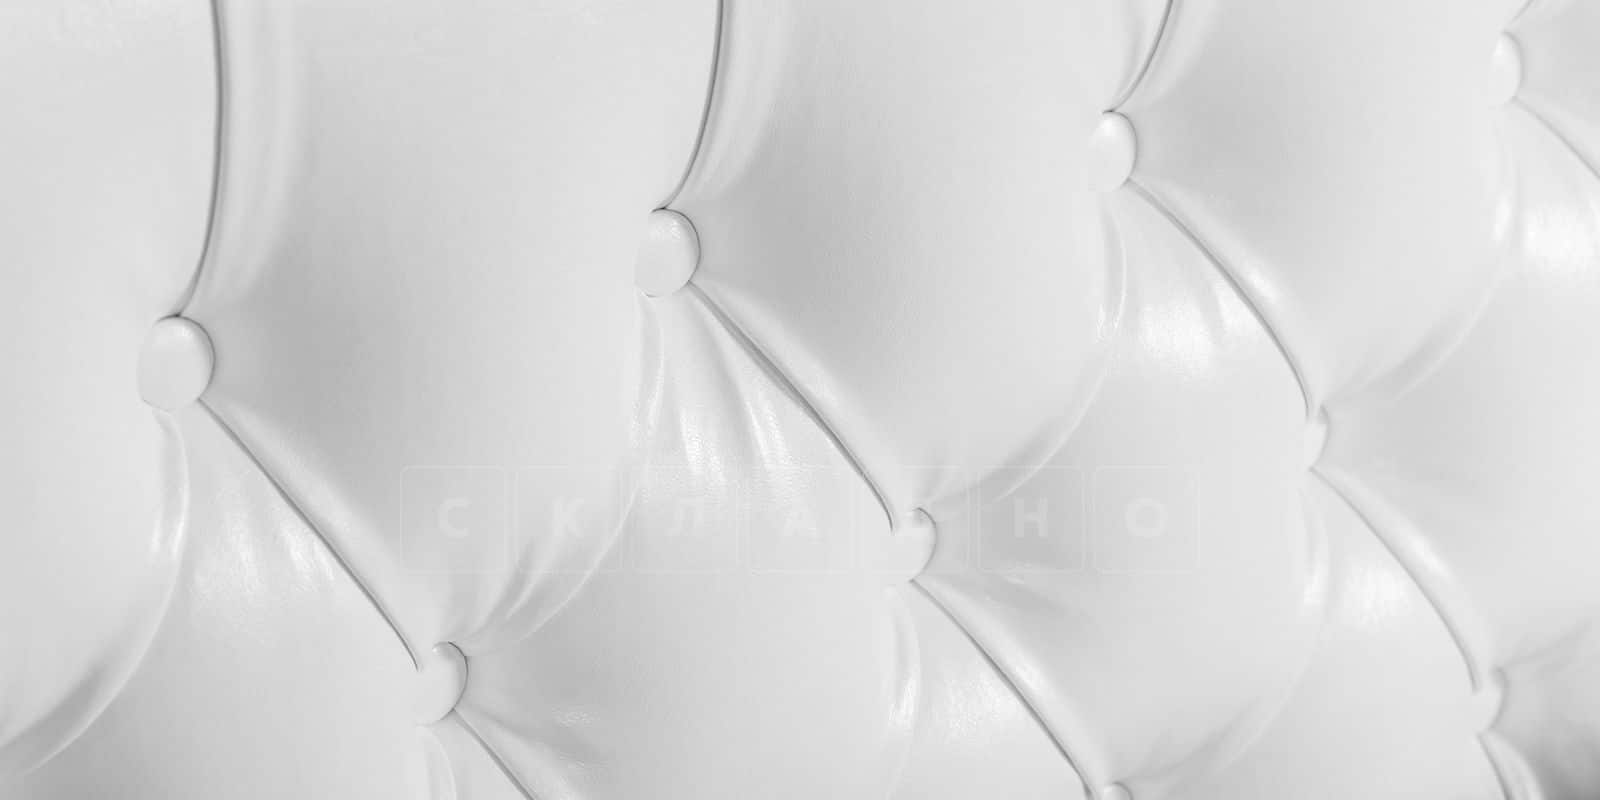 Мягкая кровать Малибу 160 см экокожа белого цвета вариант 1 фото 5 | интернет-магазин Складно